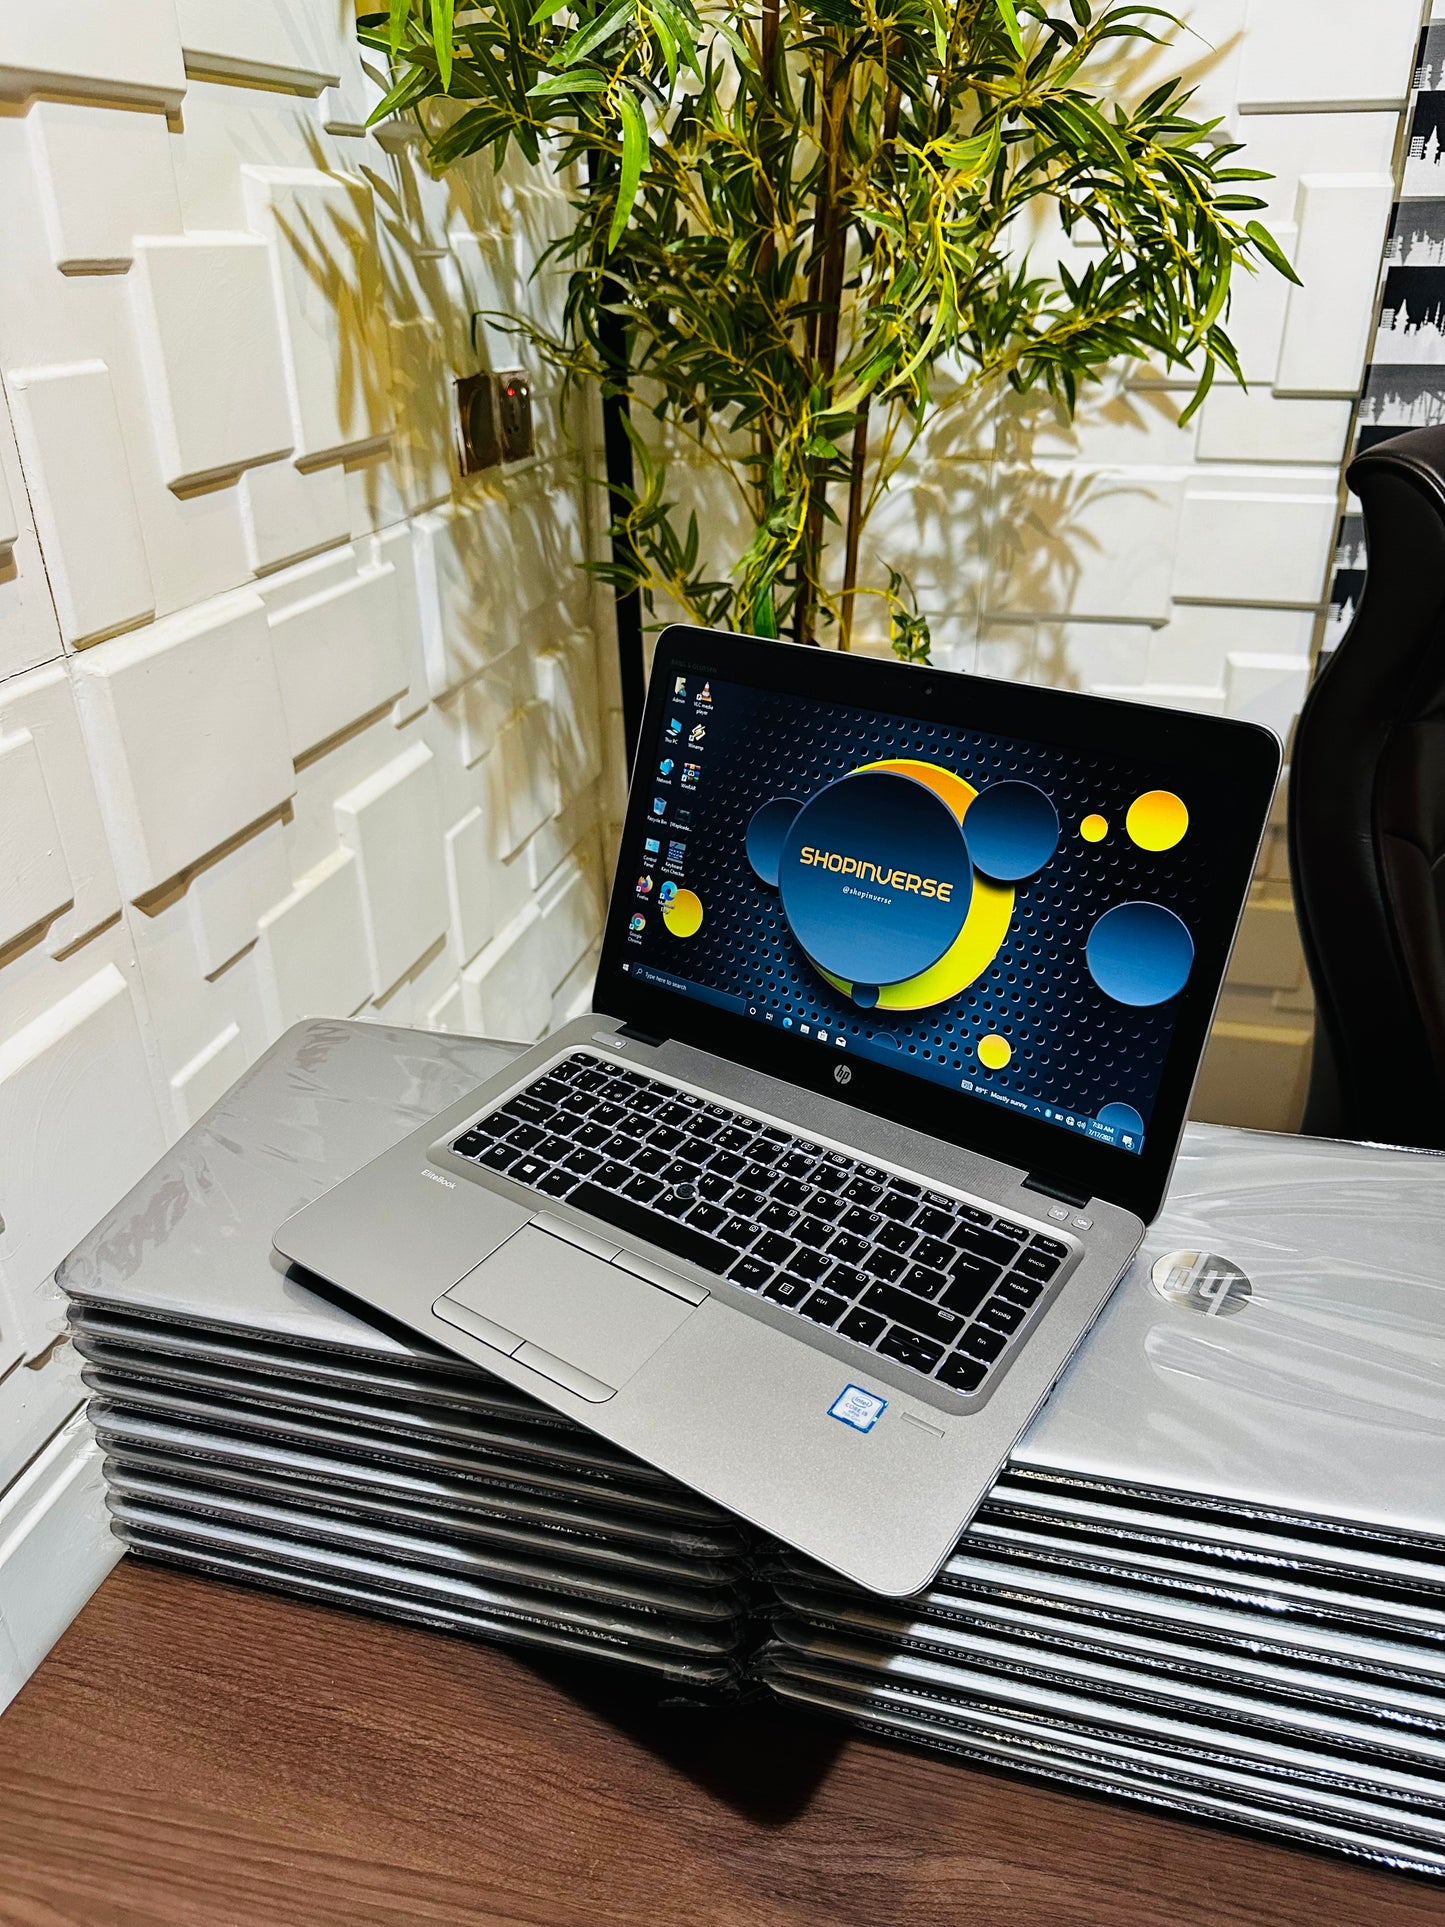 HP EliteBook 840r G4 - 7th Gen. Intel Core i5 - 500GB HDD - 8GB RAM - 4GB Total Graphics - Keyboard Light